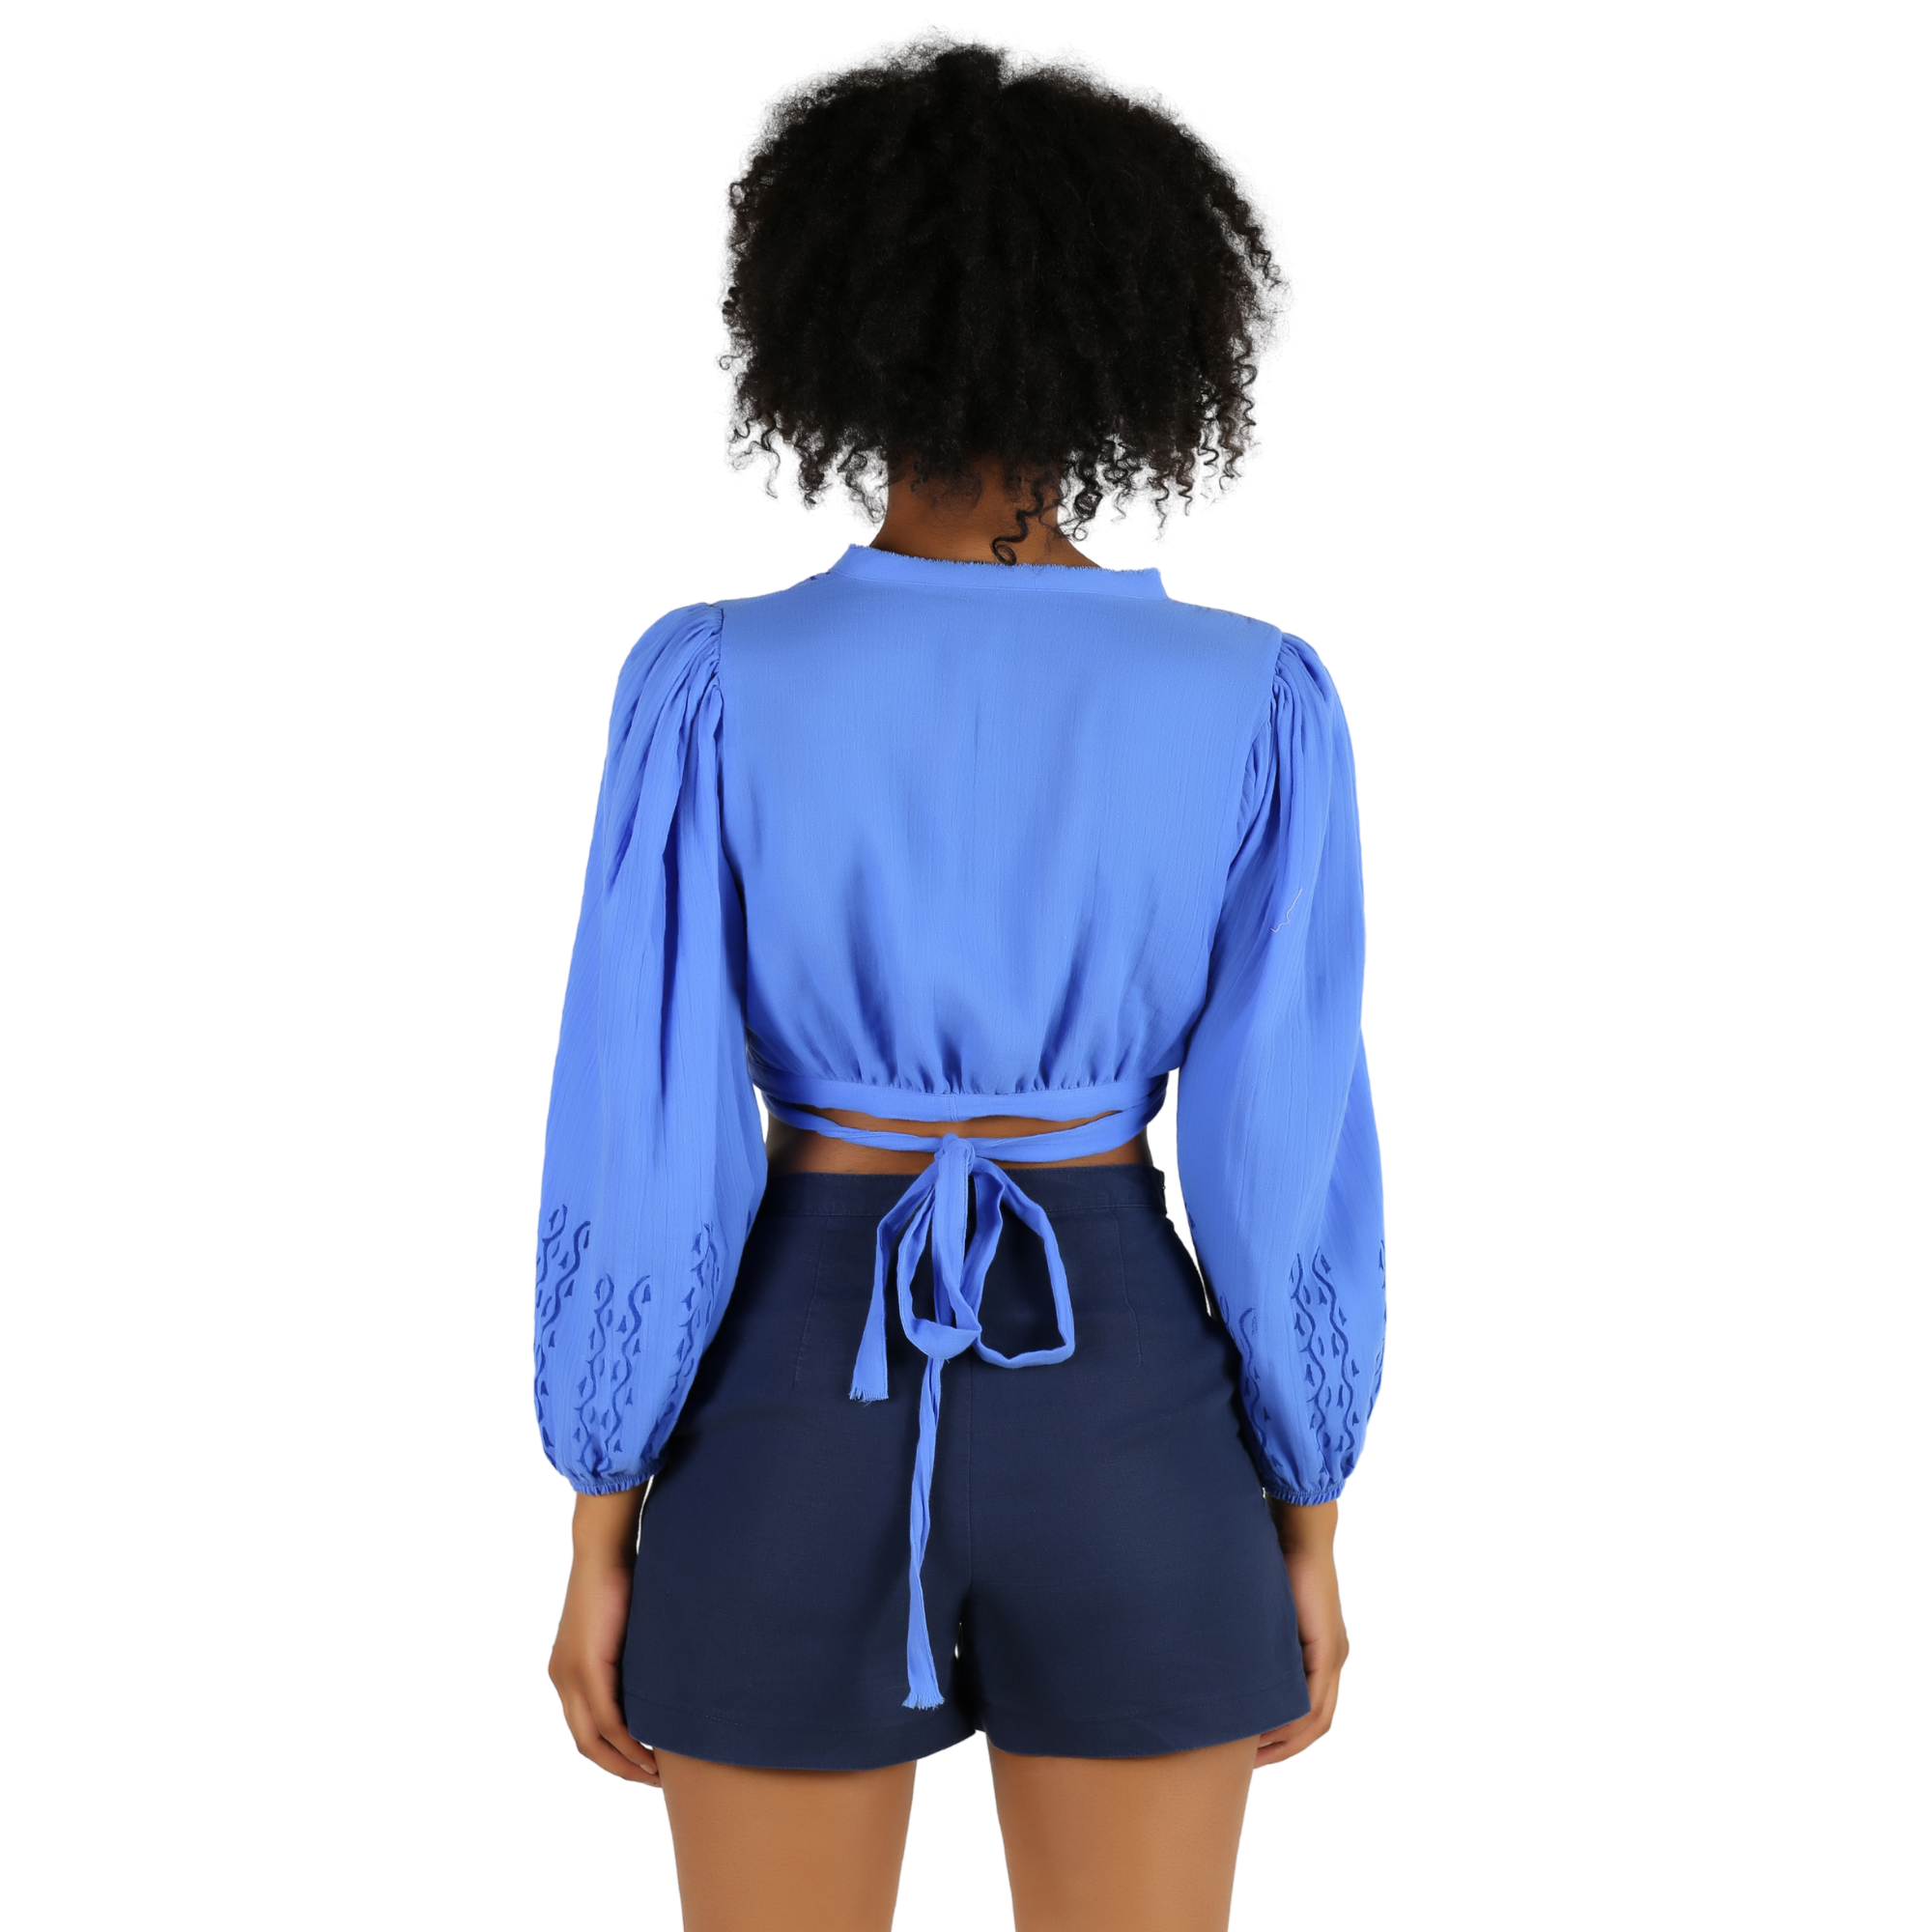 Blue Women Cotton Top, long sleeve, wrap tie back crop top blouse